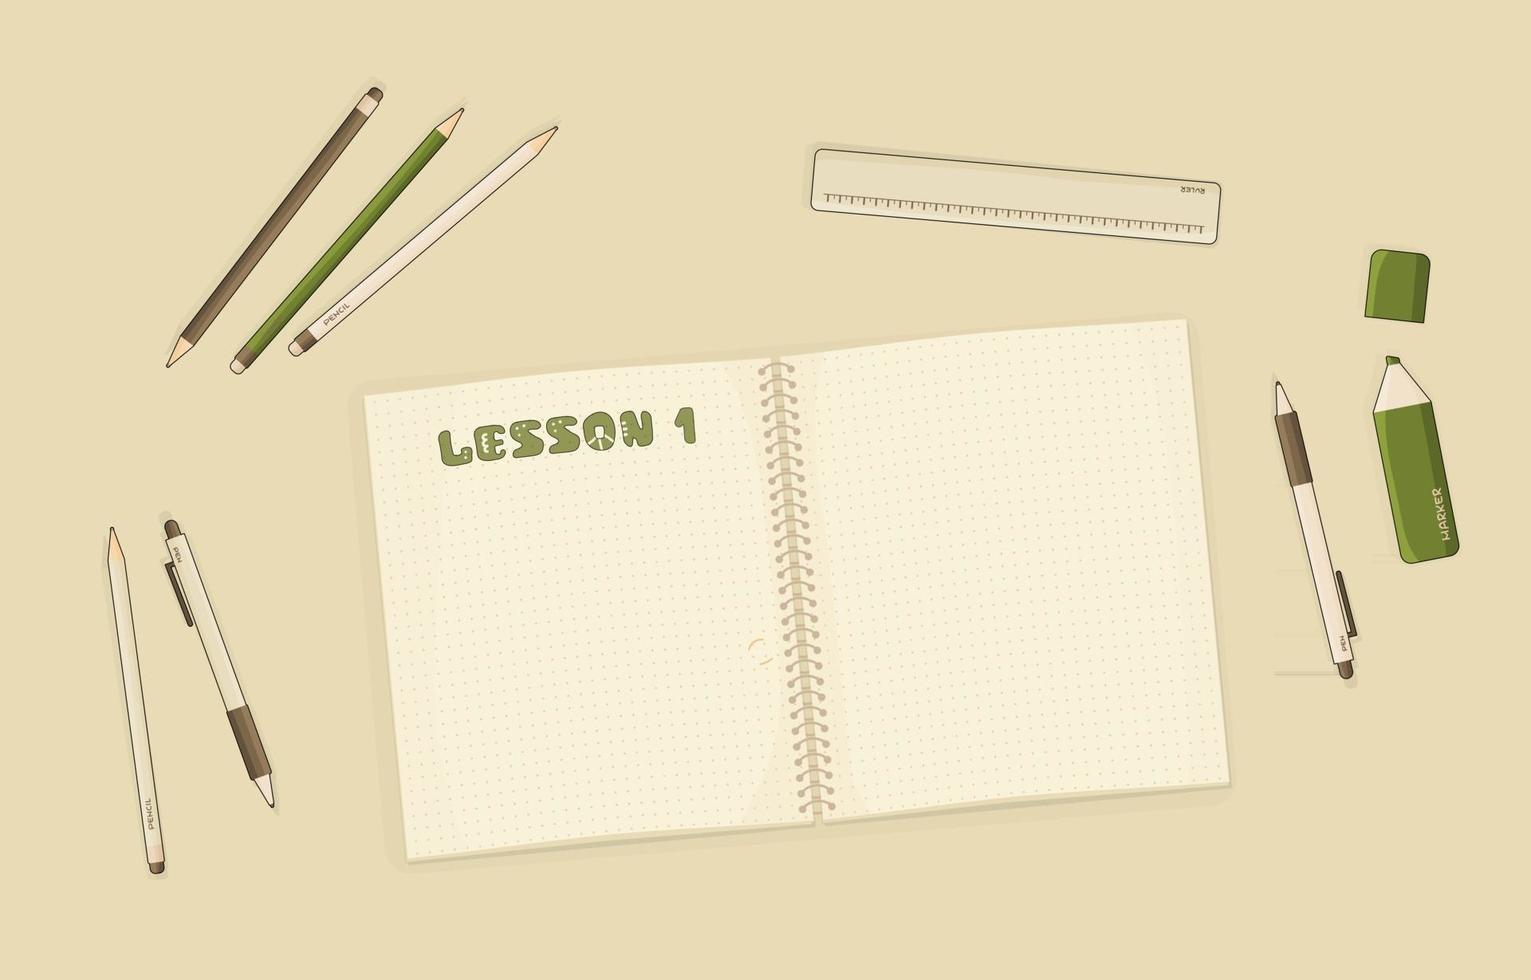 vector overzicht notebook of werkboek met stippen voor samenvattende notities voor mockup of begin van een hobby, onderwijs, pen, potlood, marker, liniaal liggen op tafel in de kamer. les nummer één is geschreven